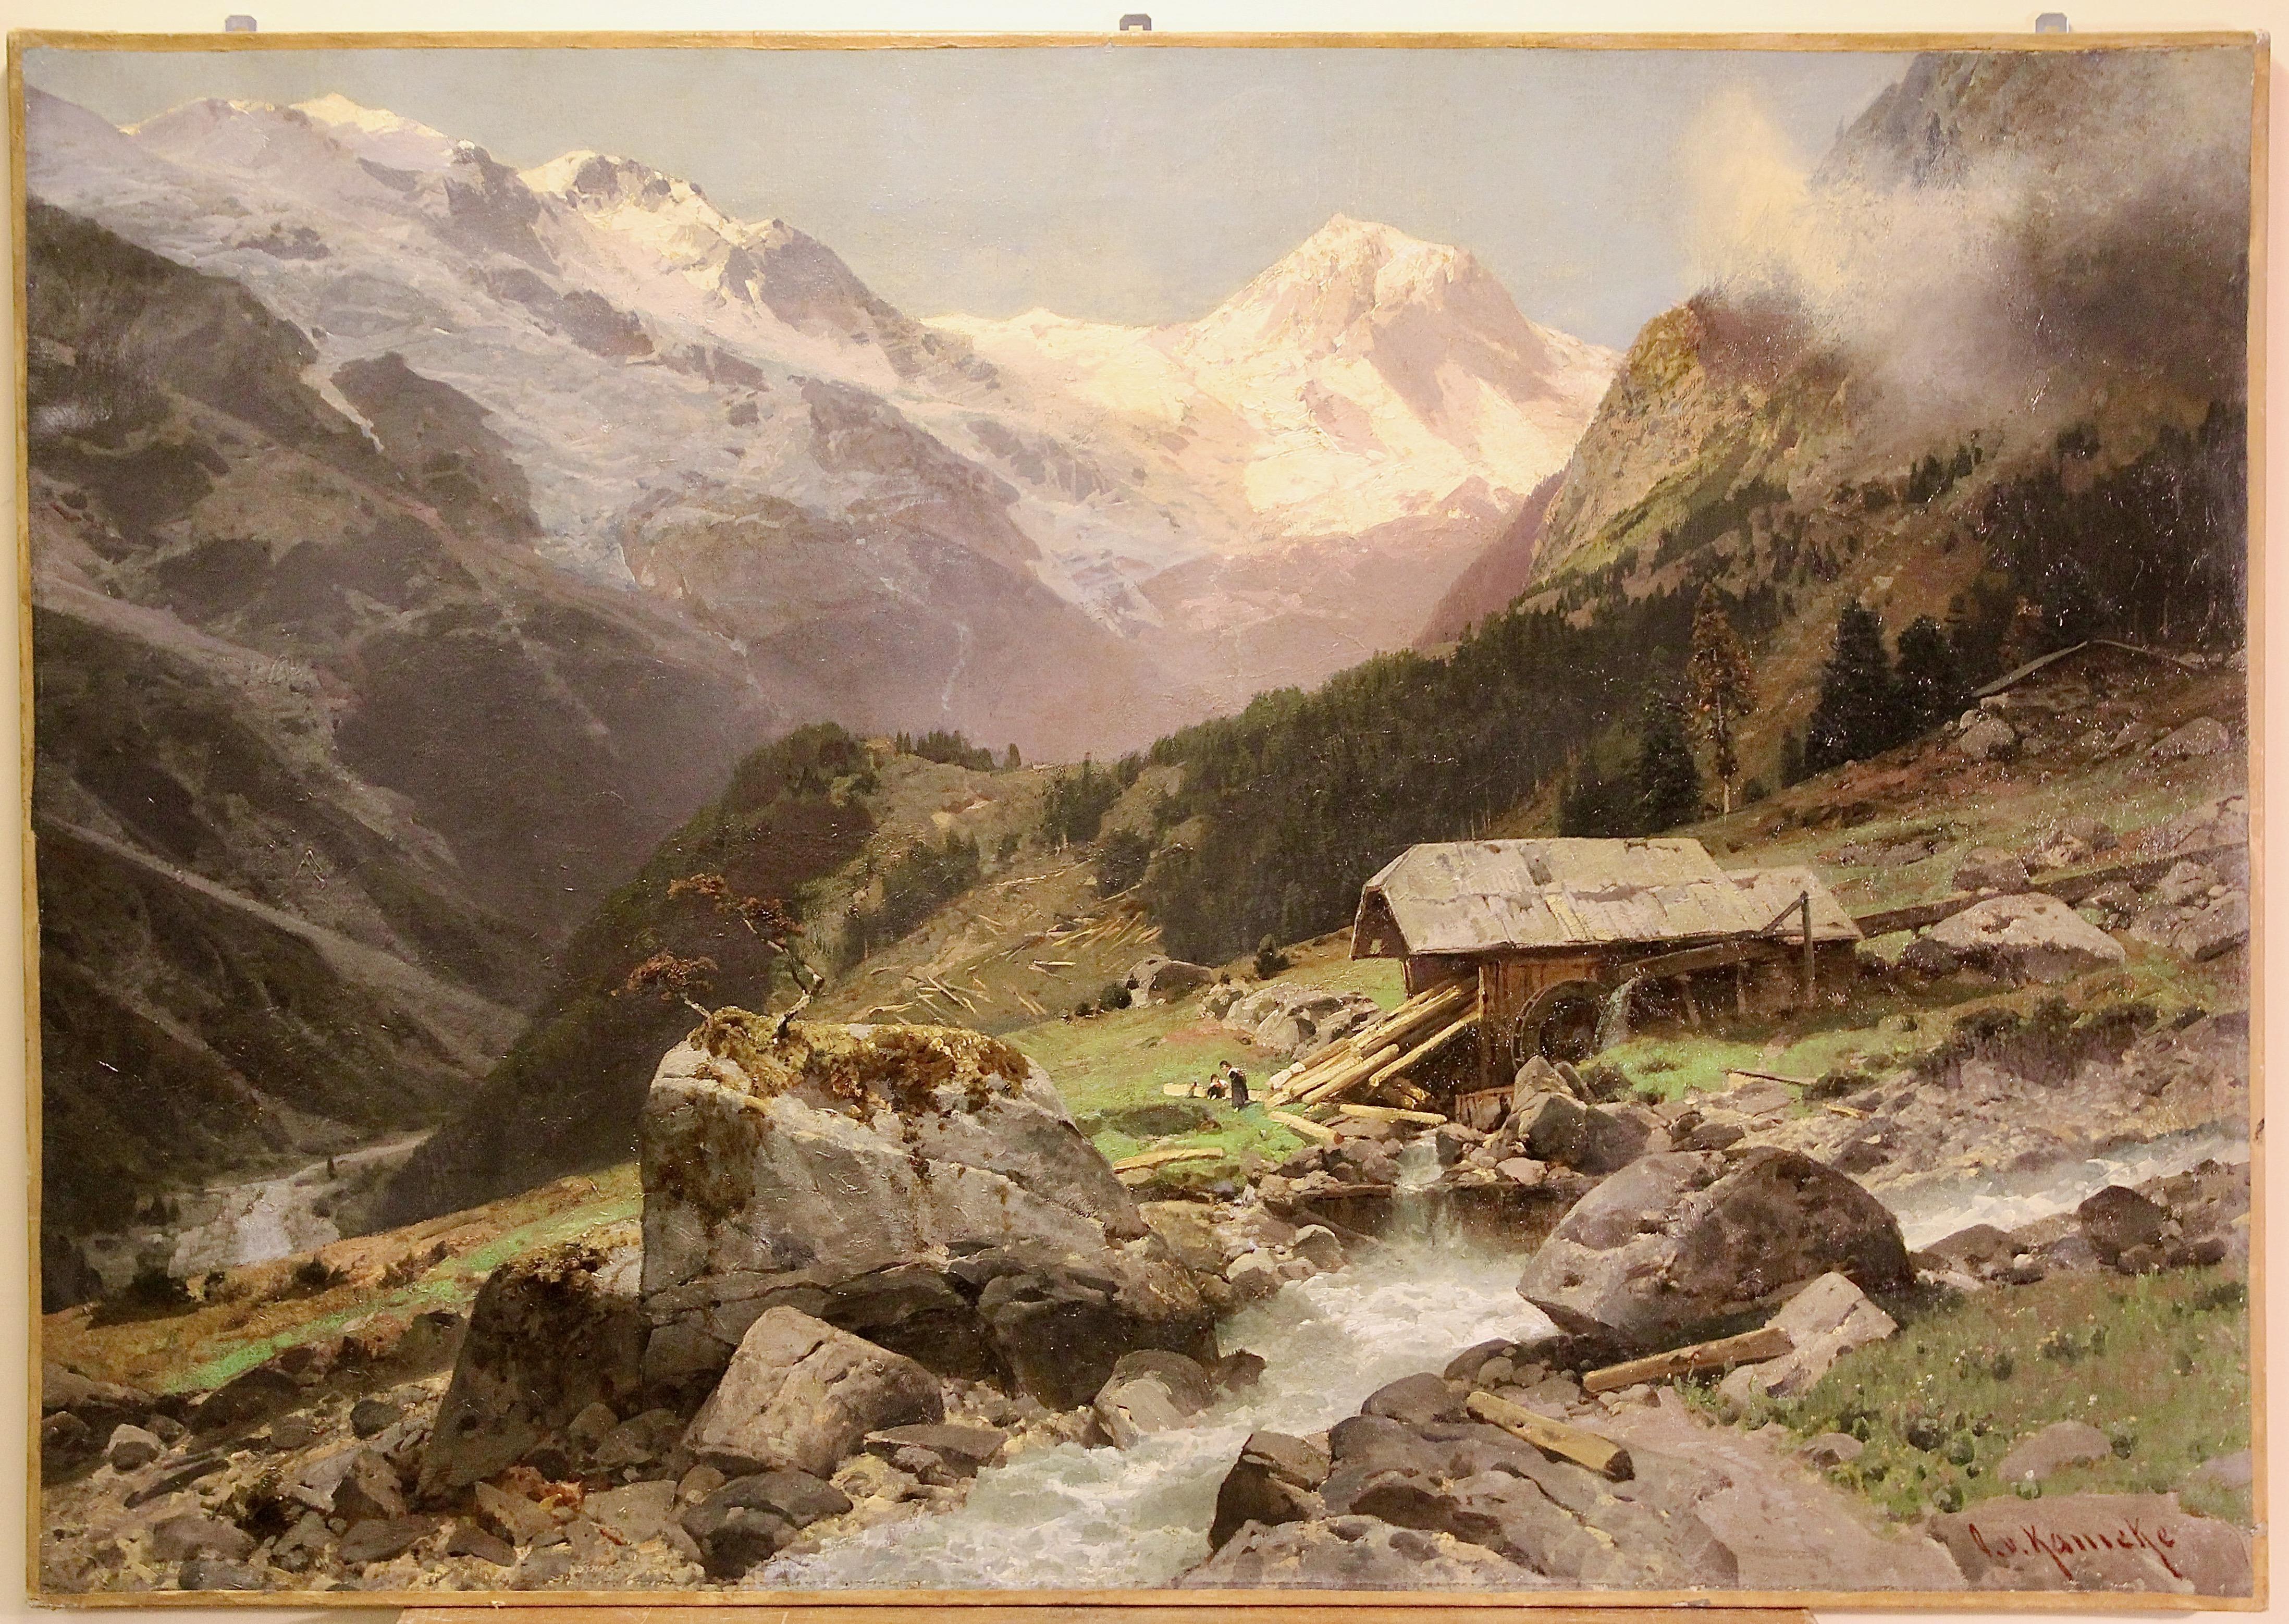 Hochalpine Landschaft, Alpen. Ölgemälde von Otto Werner Henning von Kameke. – Painting von Otto von Kameke